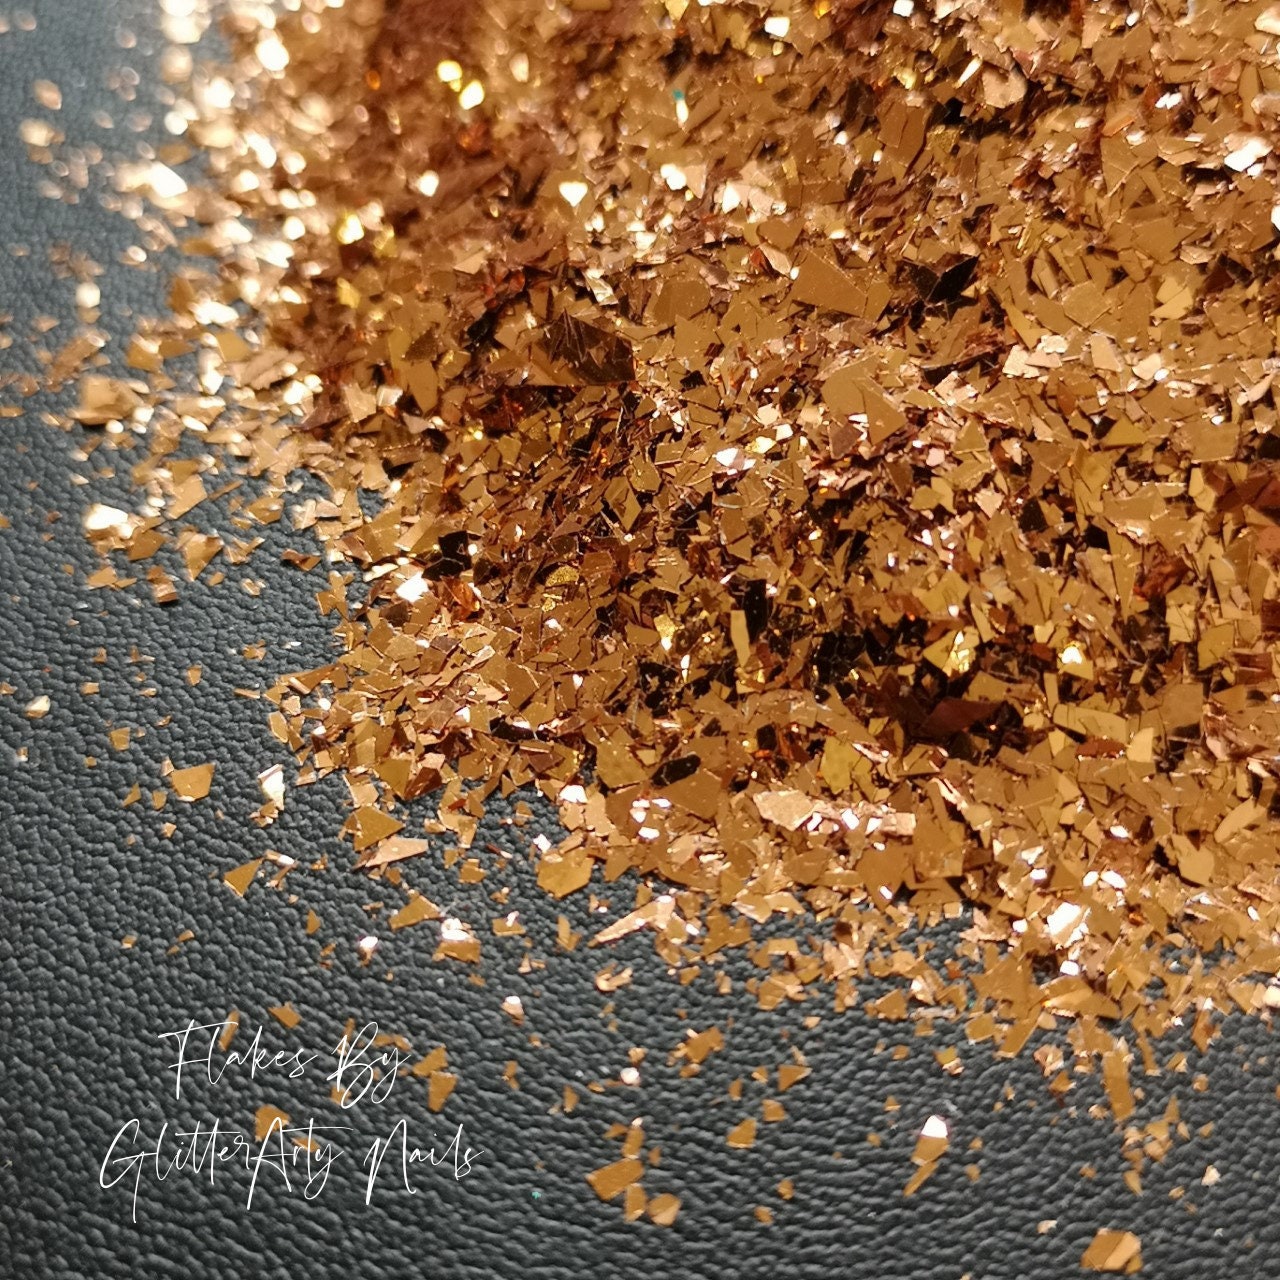 Copper Biodegradable Glitter - Nail Art